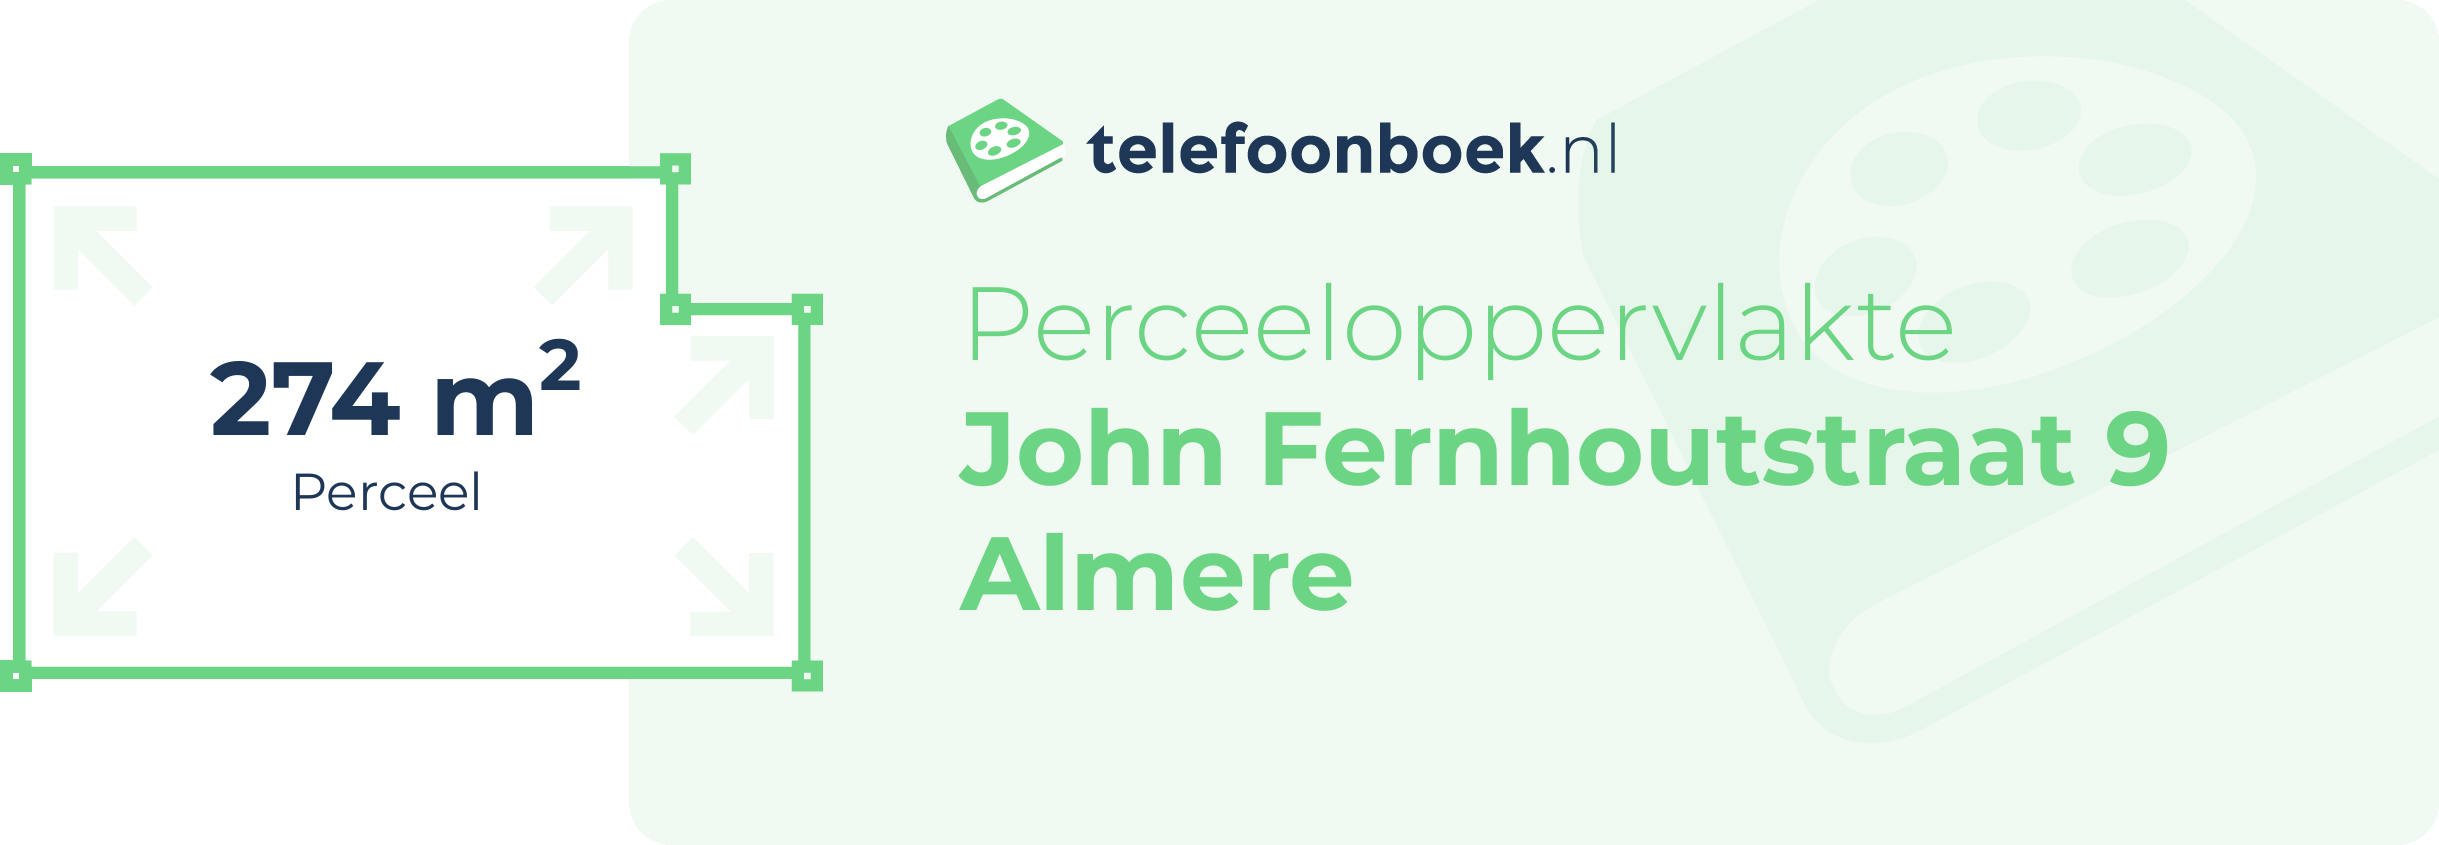 Perceeloppervlakte John Fernhoutstraat 9 Almere